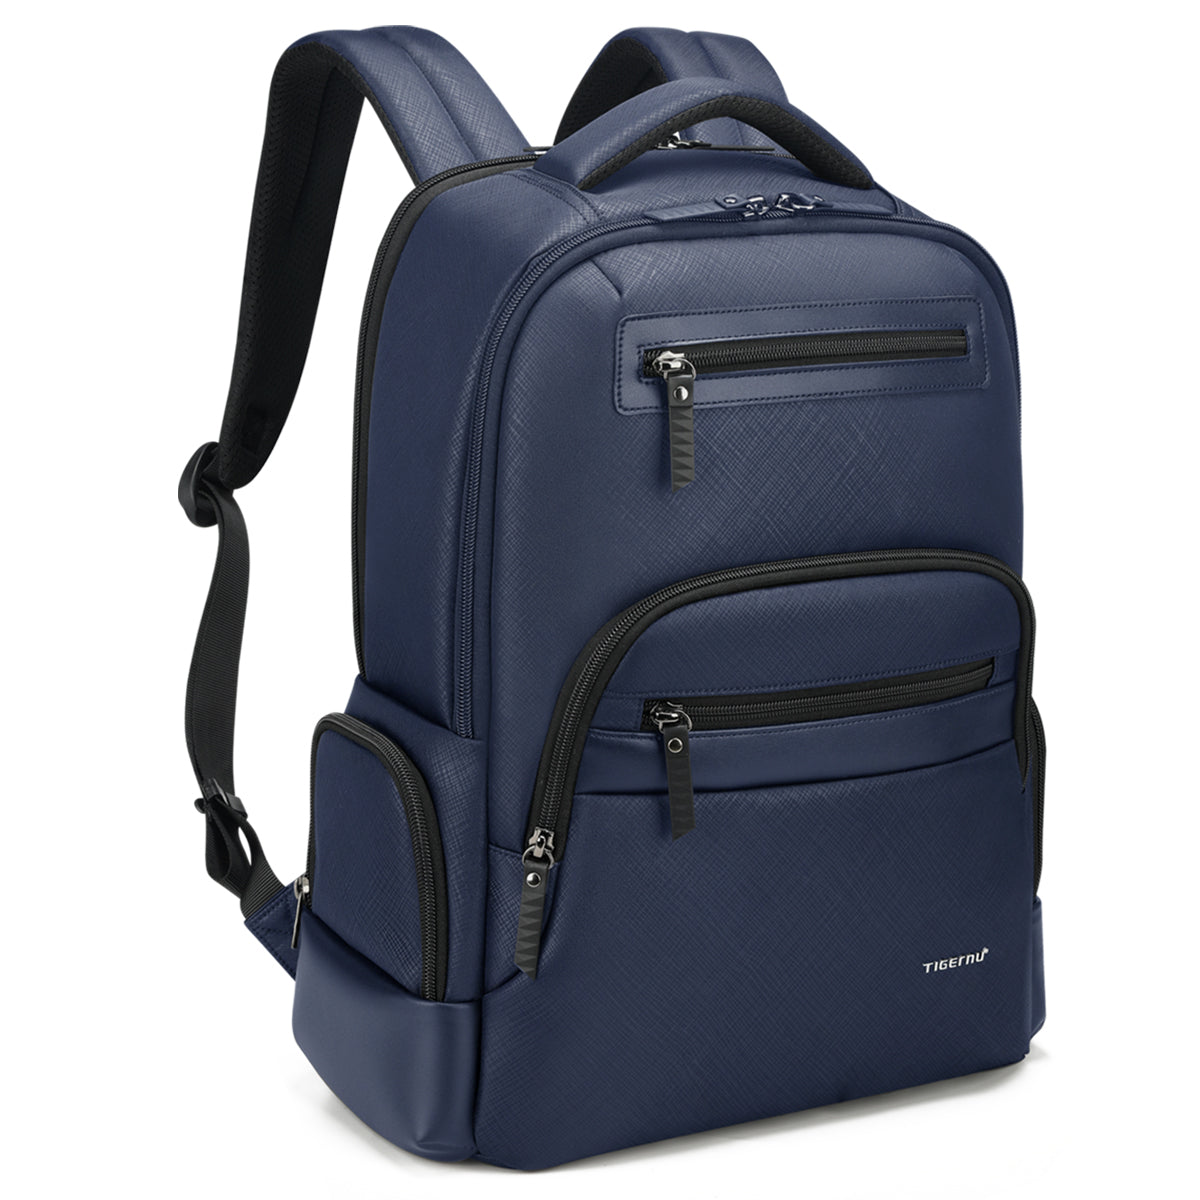 Tigernu Connect I Laptop Backpack Blue